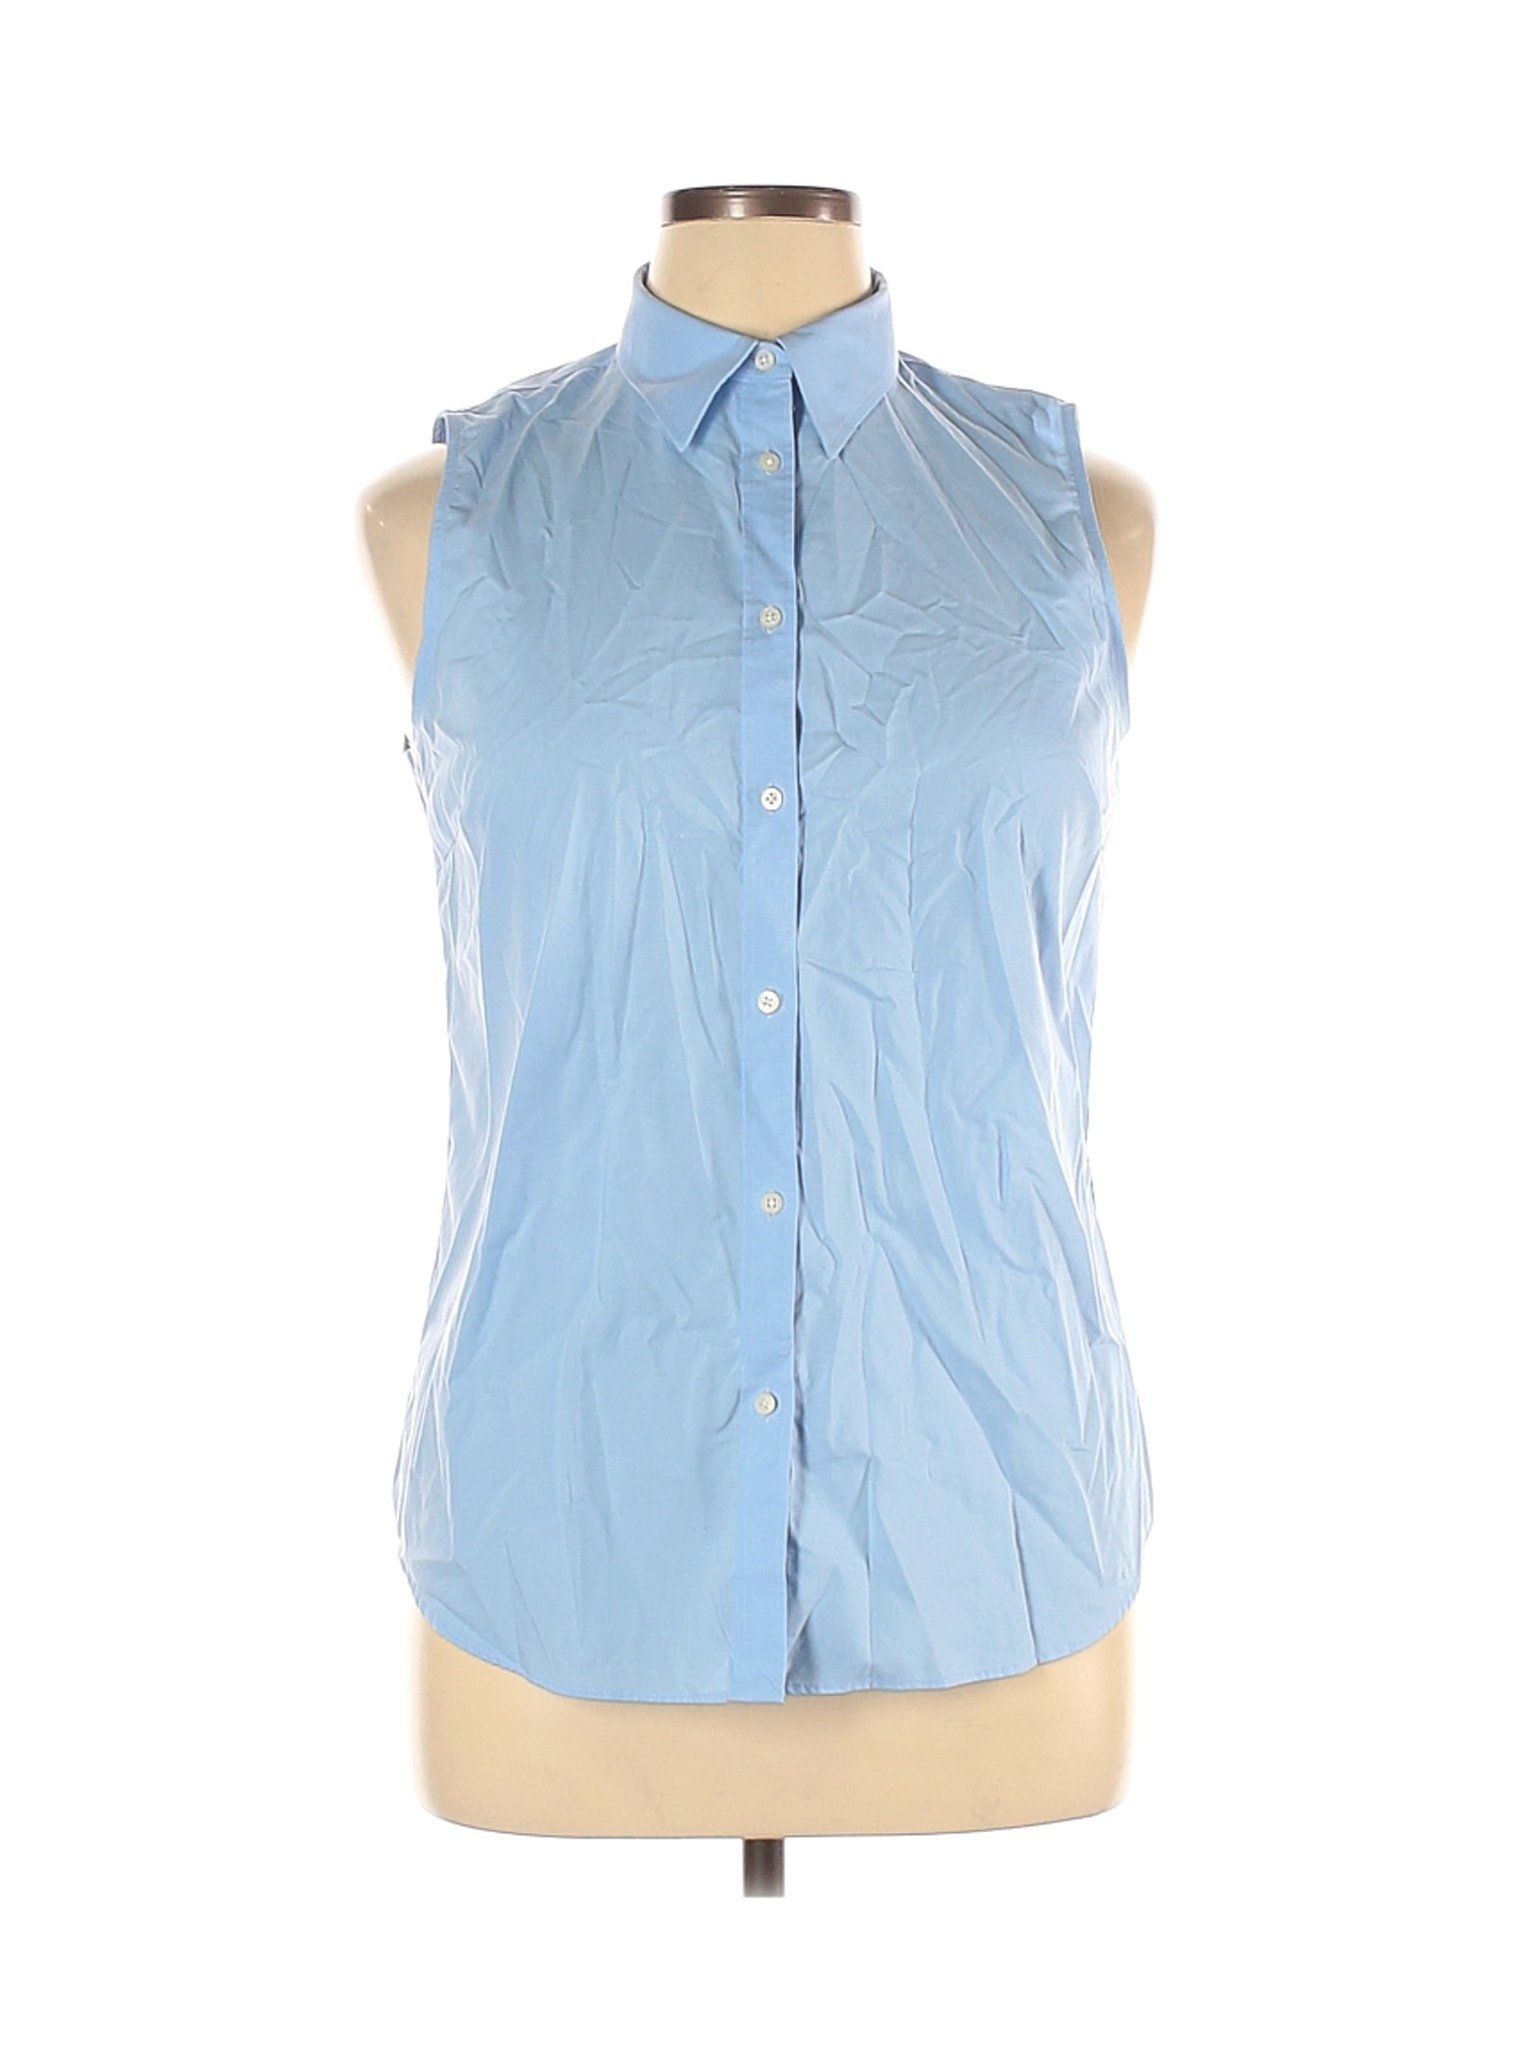 Lauren by Ralph Lauren Women Blue Sleeveless Button-Down Shirt 14 | eBay